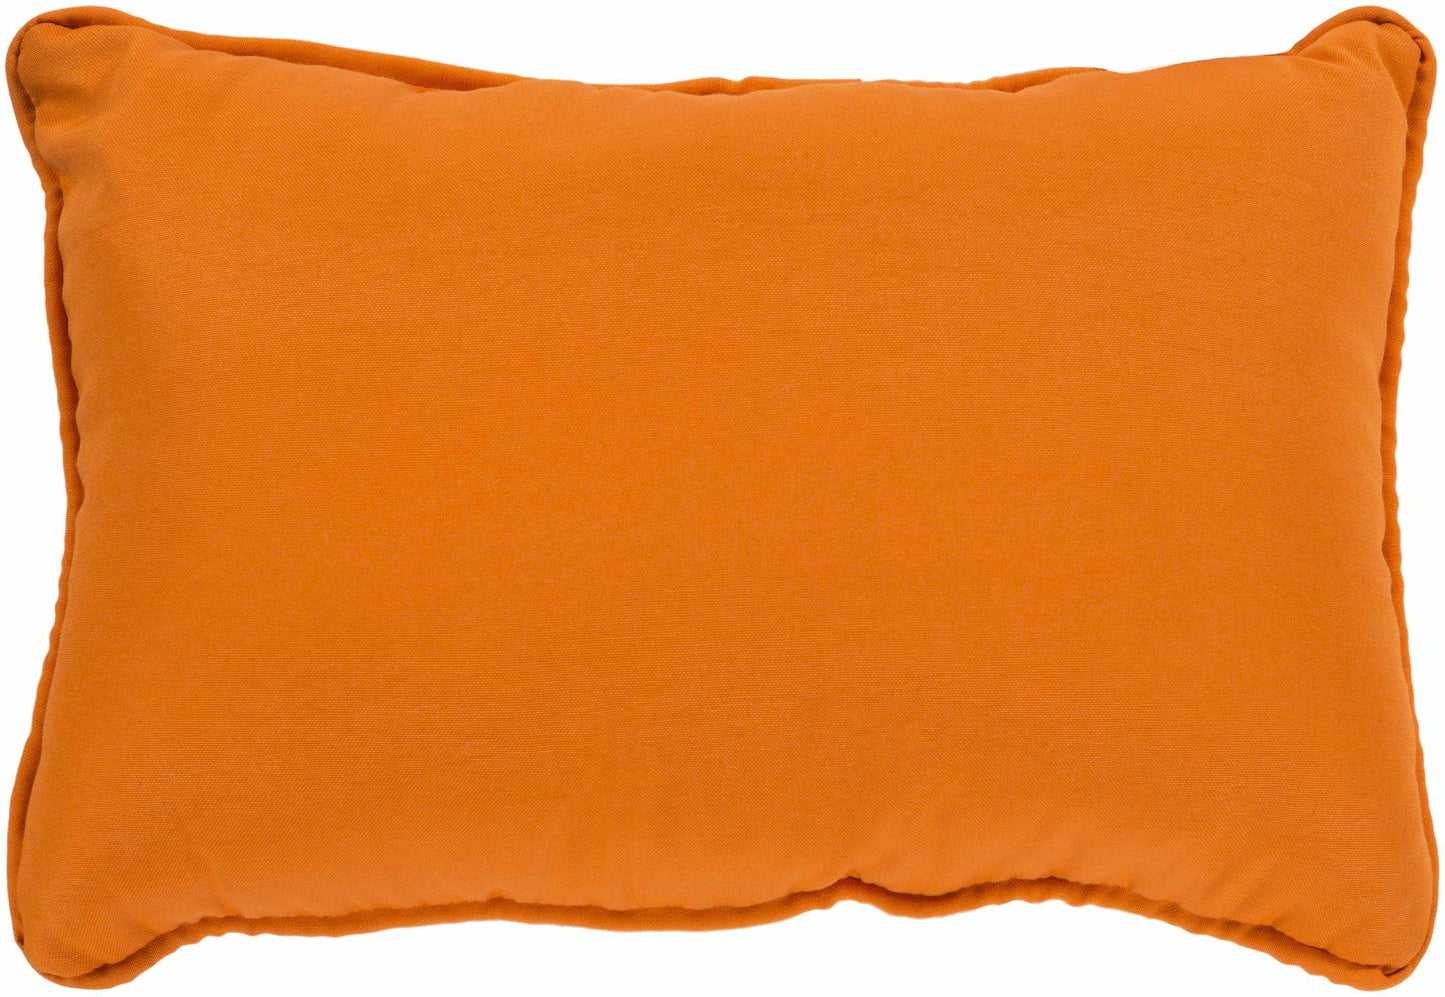 Zemst Bright Orange Pillow Cover